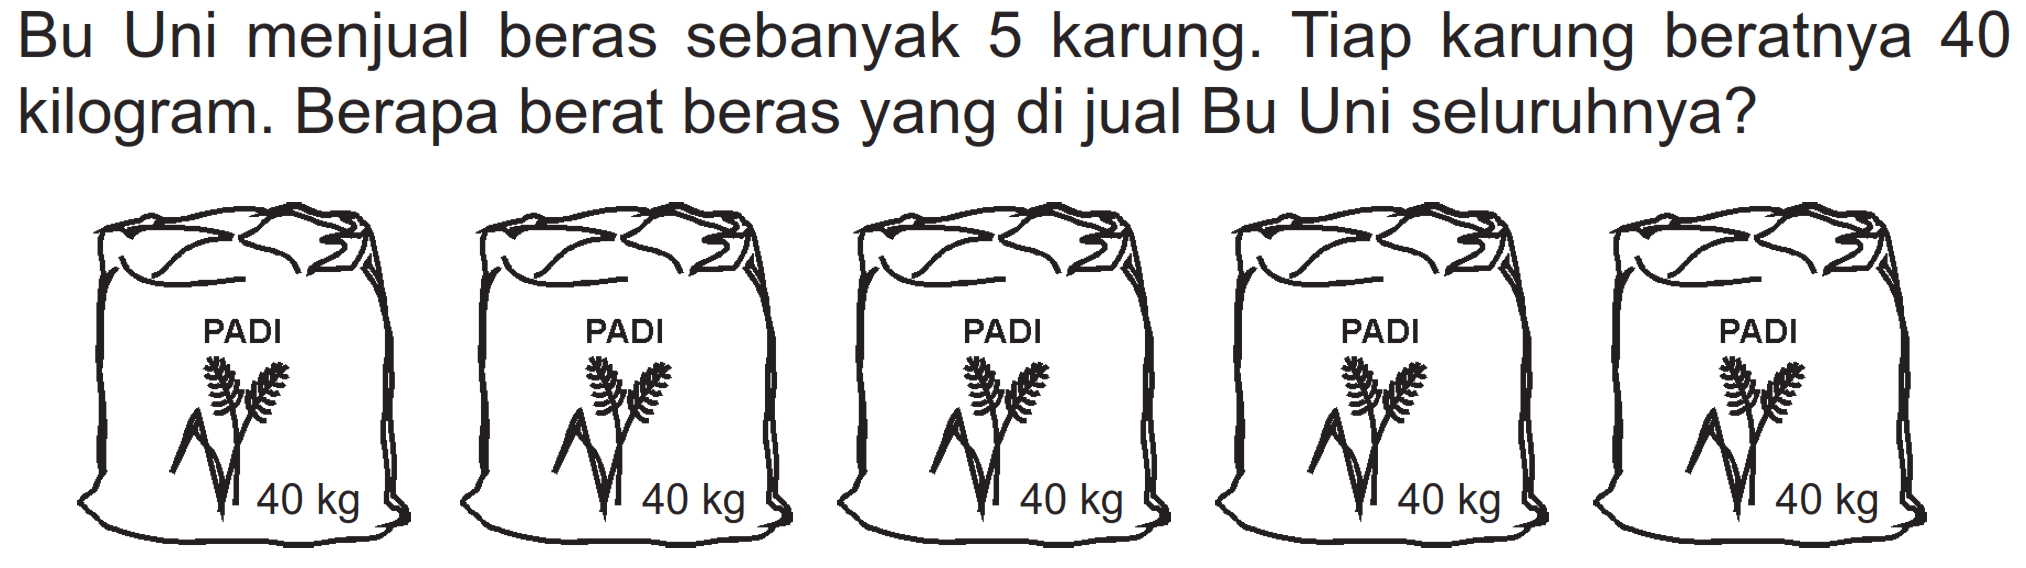 Bu Uni menjual beras sebanyak 5 karung. Tiap karung beratnya 40 kilogram. Berapa berat beras yang di jual Bu Uni seluruhnya?
PADI PADI PADI PADI PADI
40 kg 40 kg 40 kg 40 kg 40 kg 